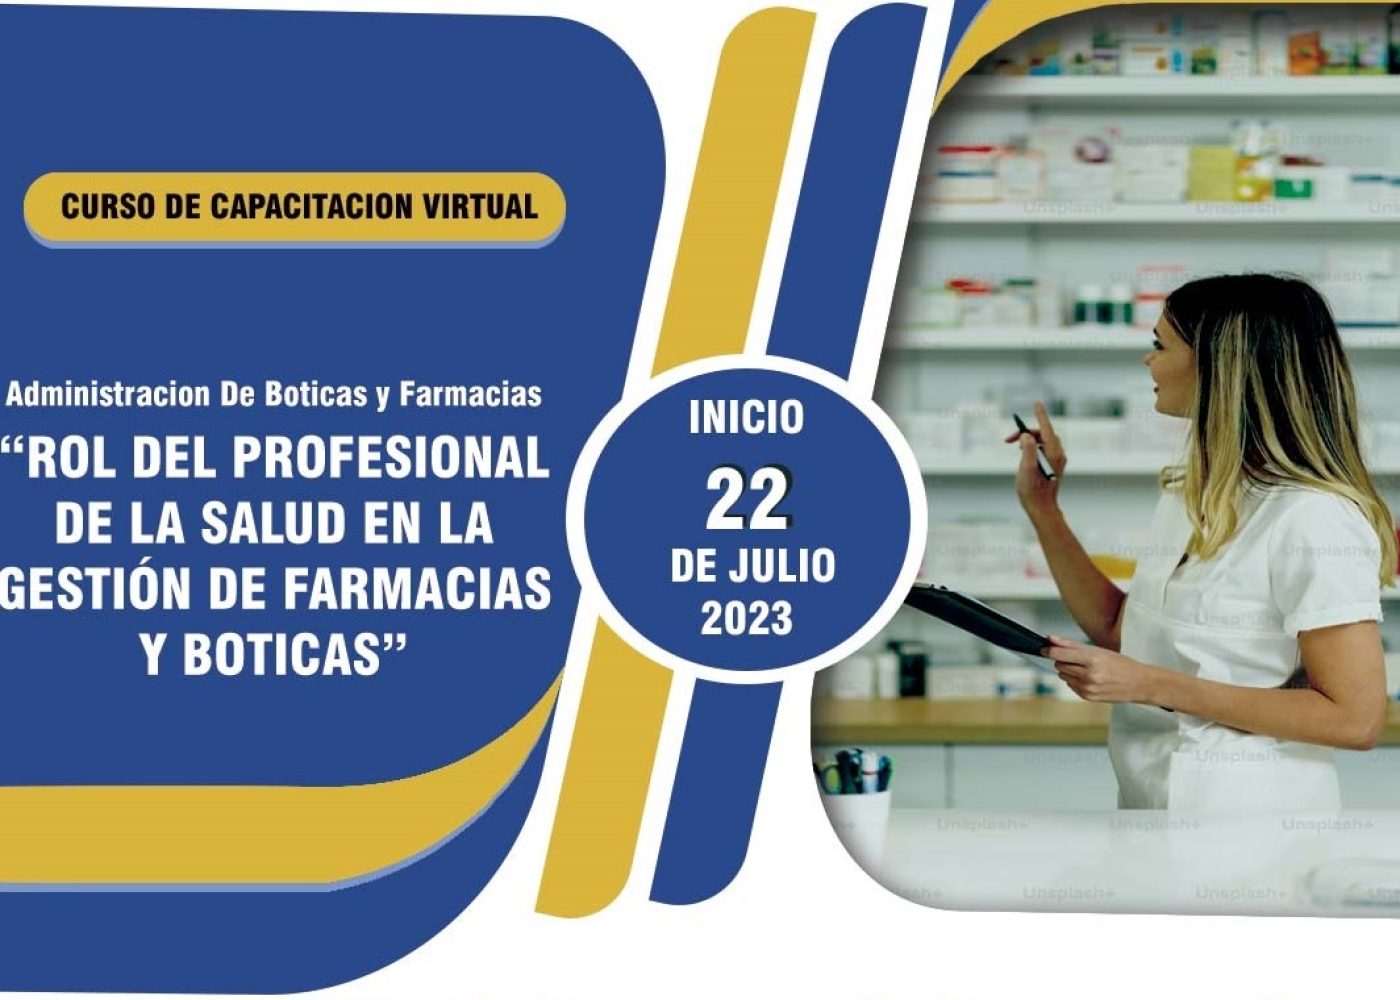 Curso de Capacitación Virtual: ADMINISTRACION DE BOTICAS Y FARMACIAS: “Rol del Profesional de la Salud en la Gestión de Farmacias y Boticas”